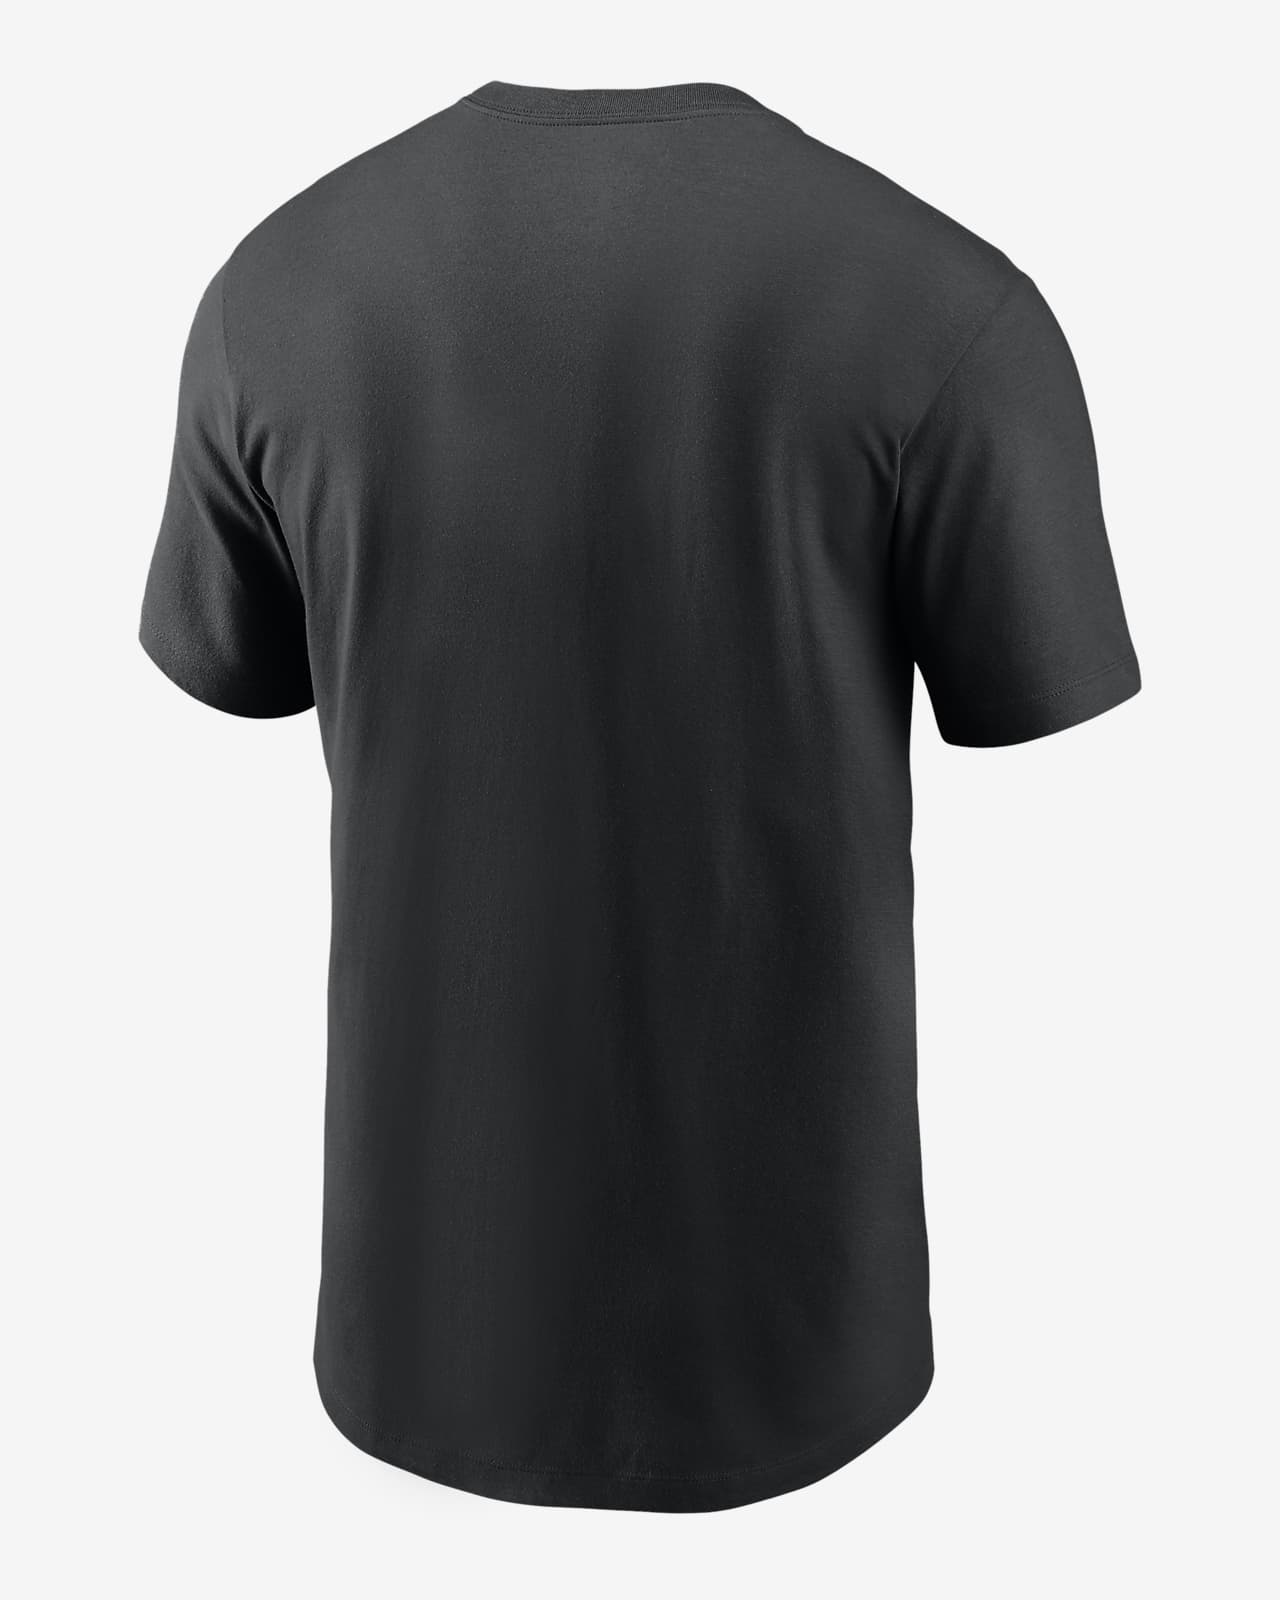 Nike Cooperstown Logo (MLB Pittsburgh Pirates) Men's T-Shirt